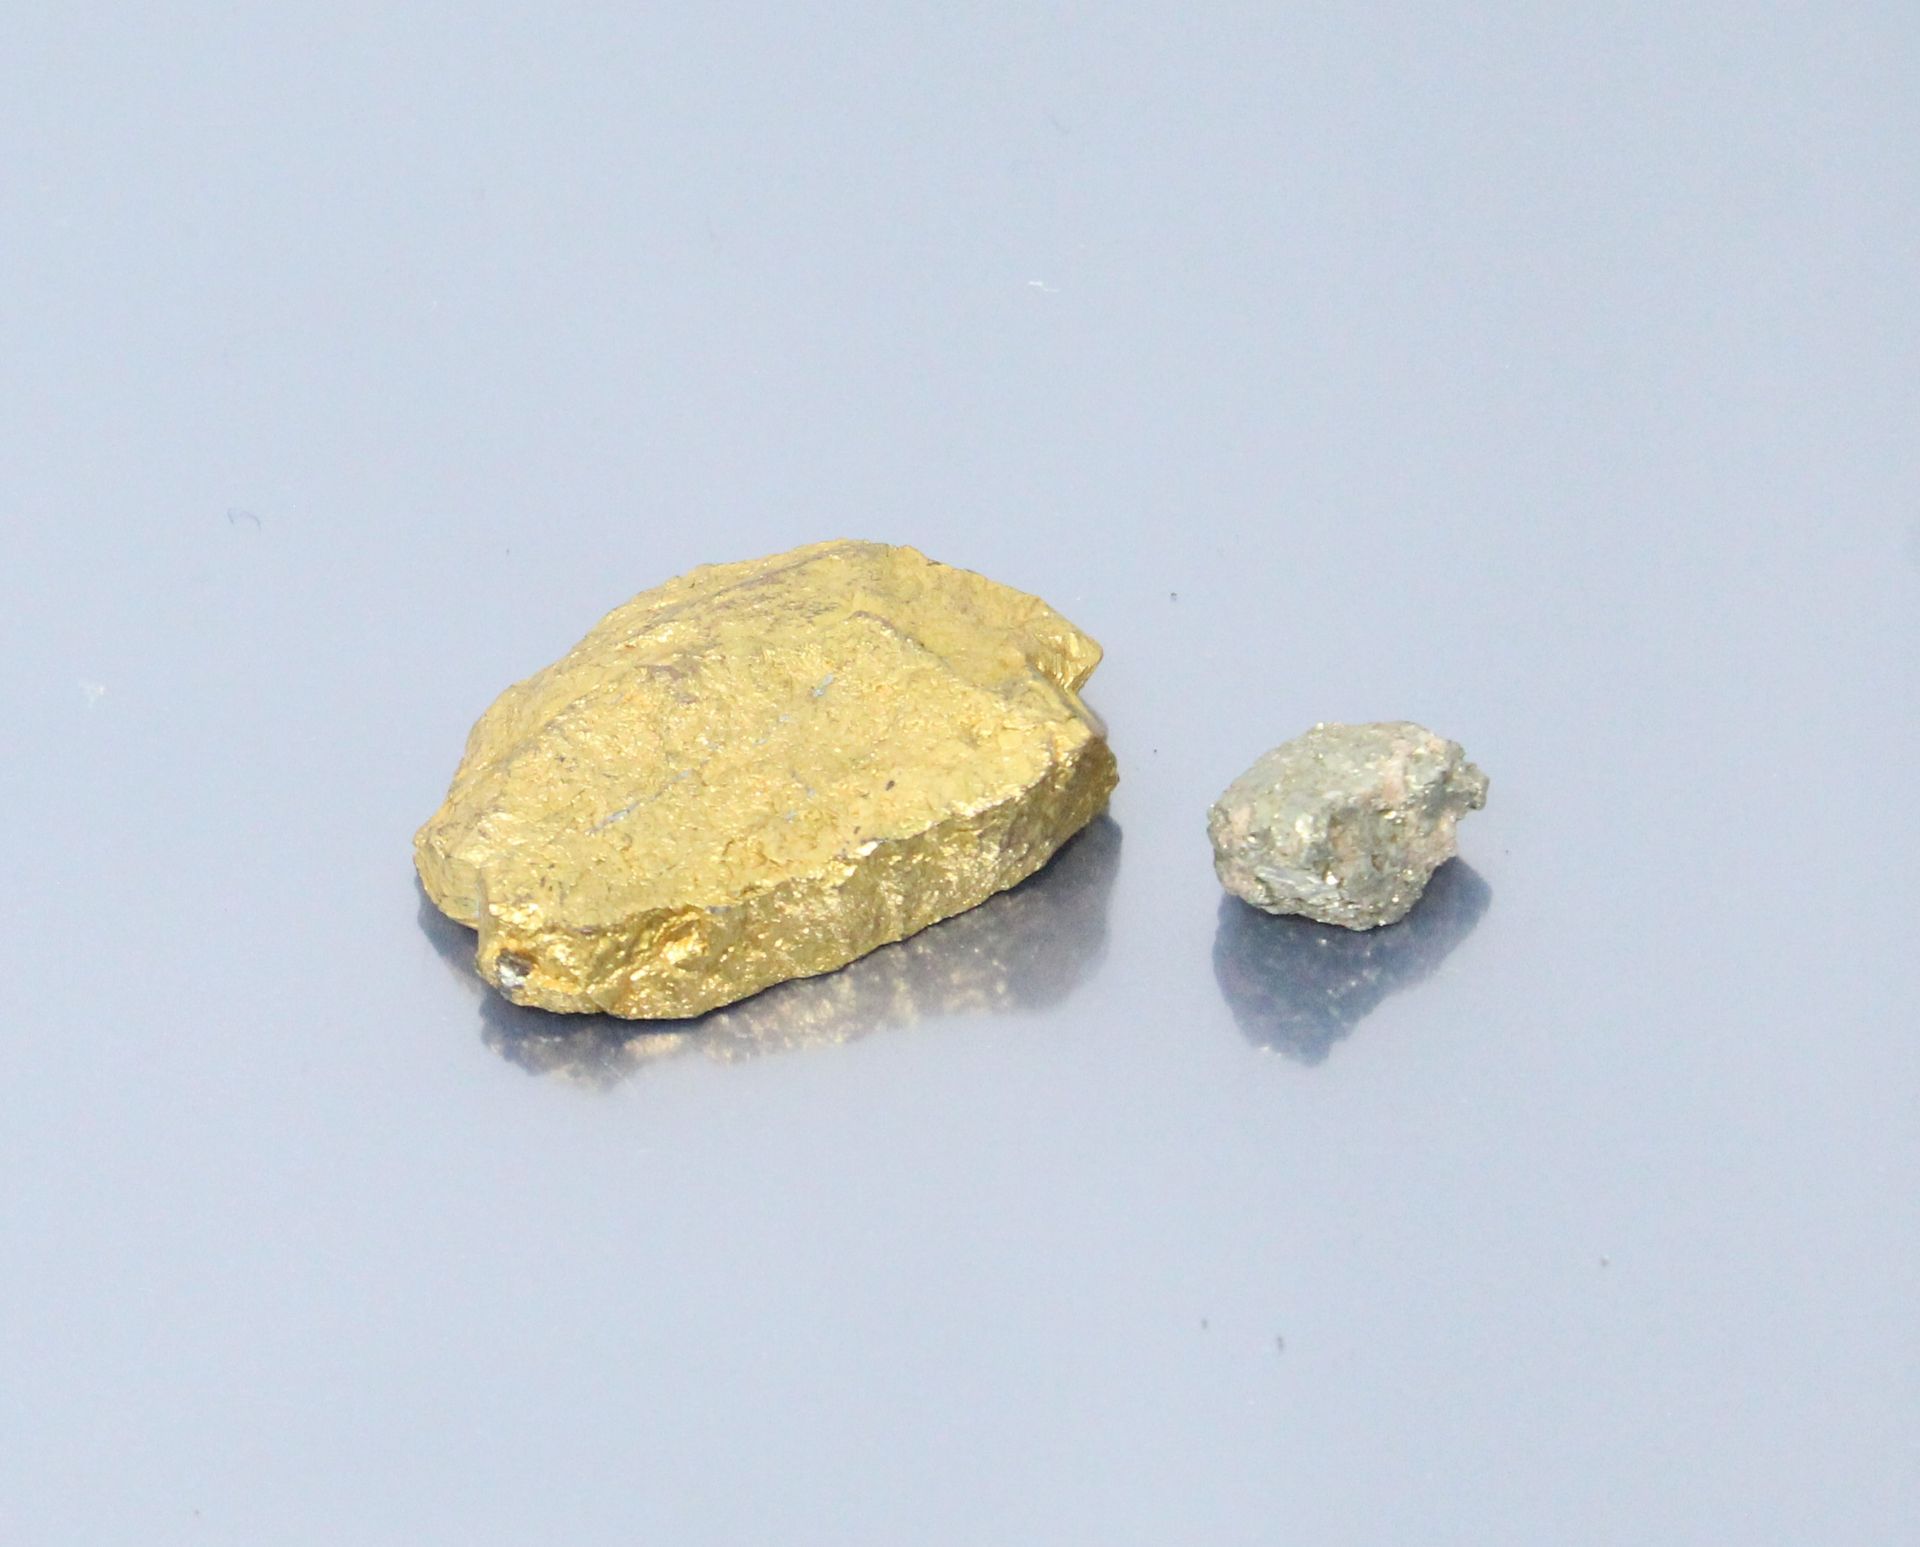 Null 纸上粗糙的黄铁矿一个。

重量：57.8克。